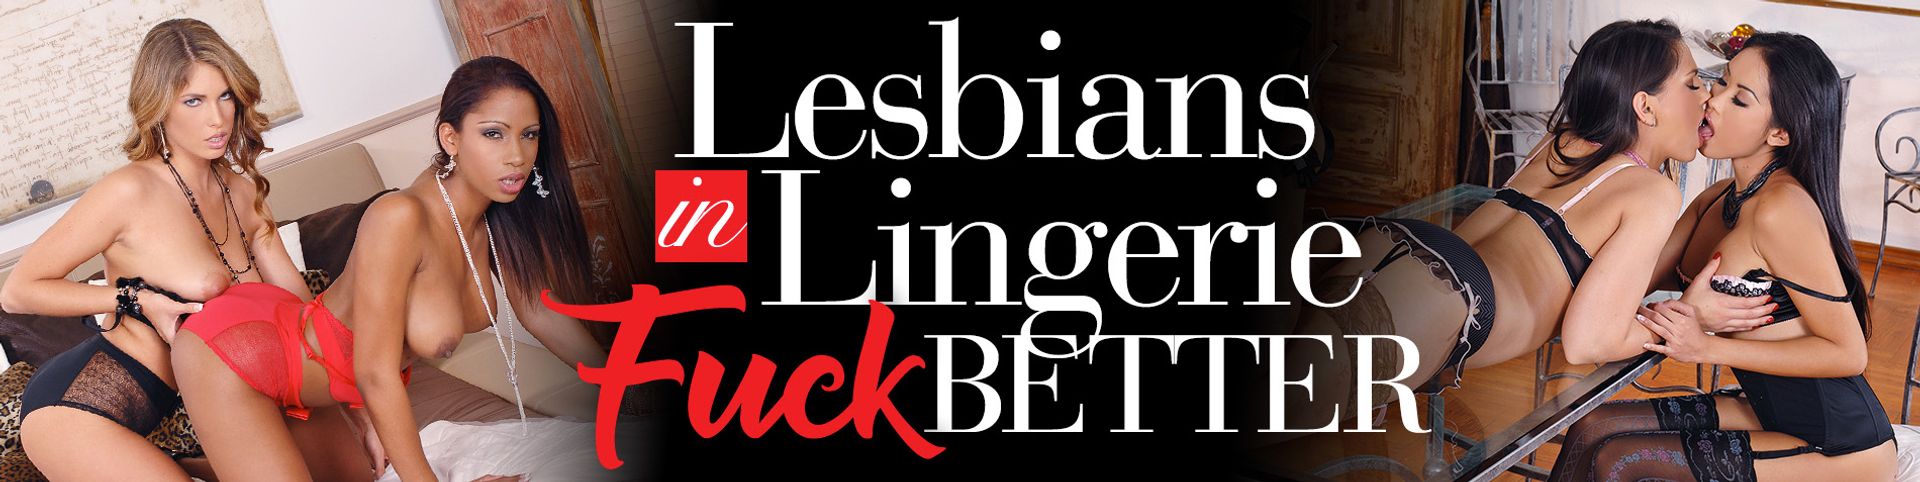 Lesbians in Lingerie Fuck Better